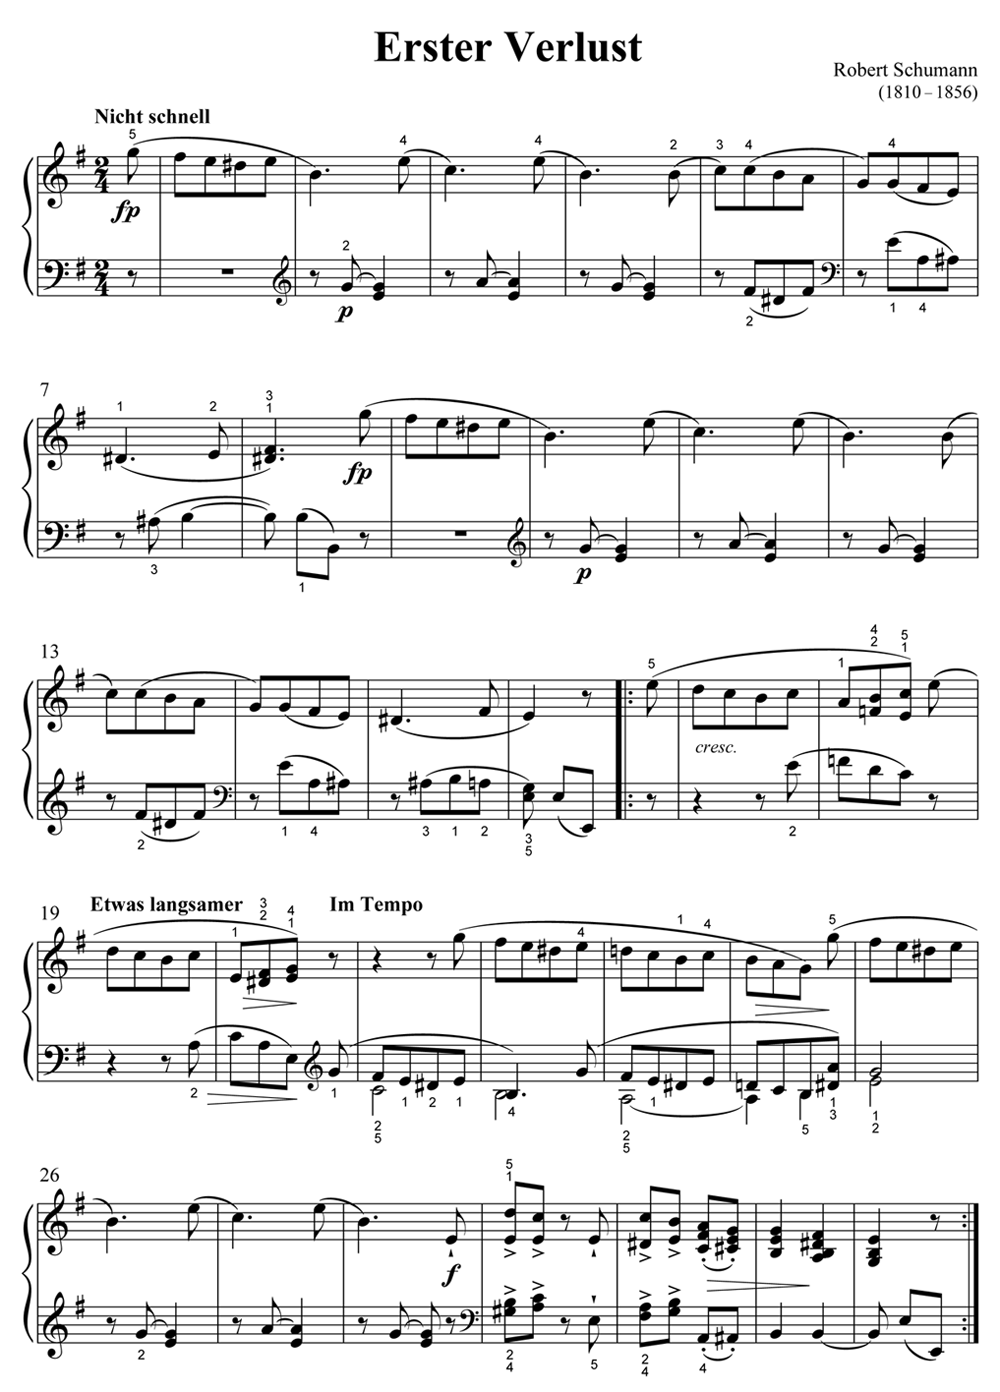 Noten zu Robert Schumann: Erster Verlust